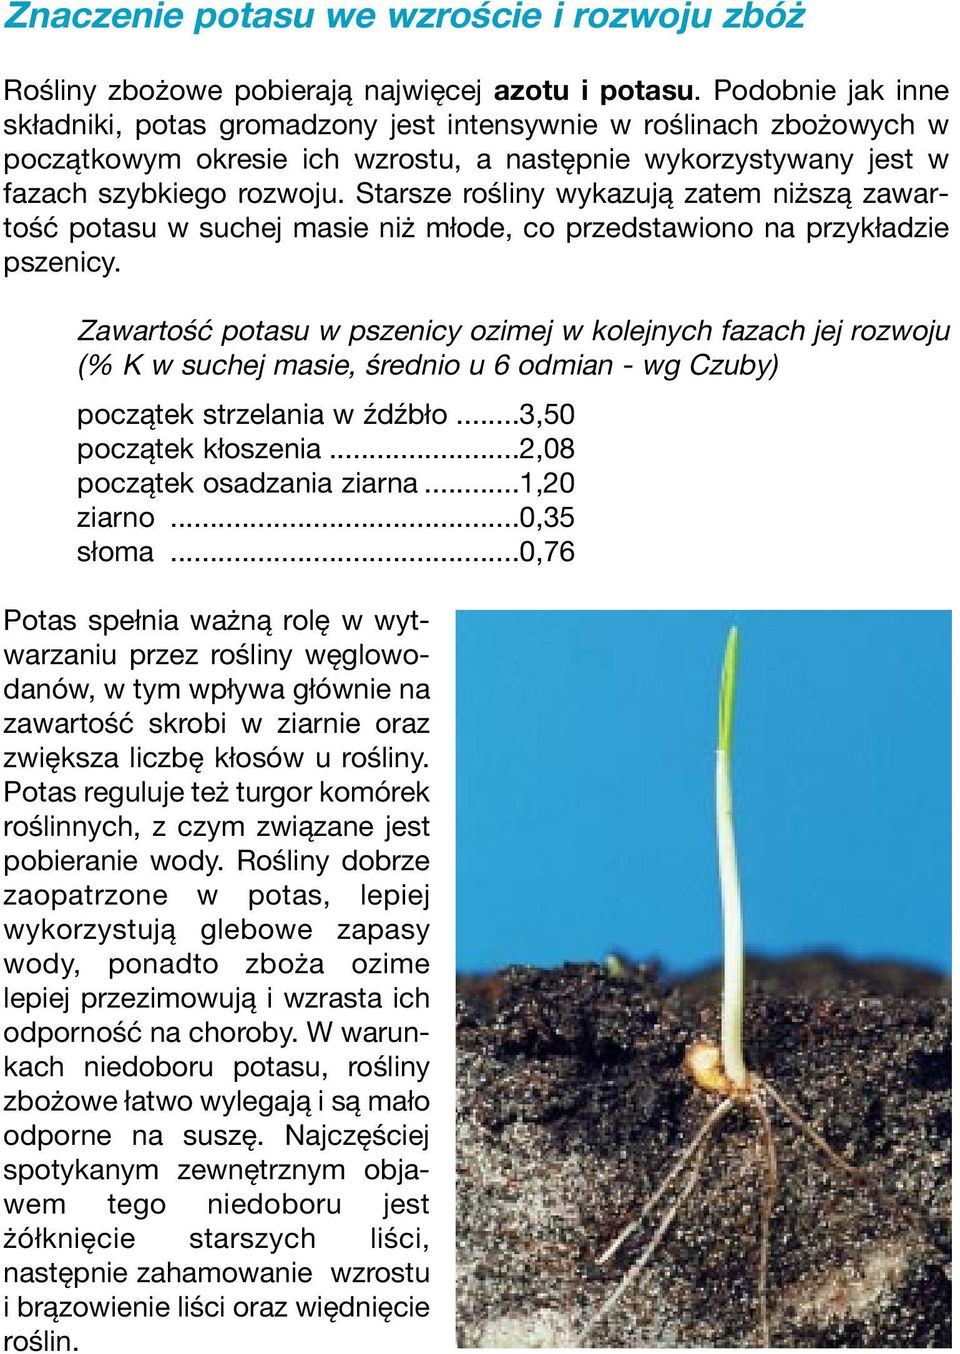 Starsze rośliny wykazują zatem niższą zawartość potasu w suchej masie niż młode, co przedstawiono na przykładzie pszenicy.